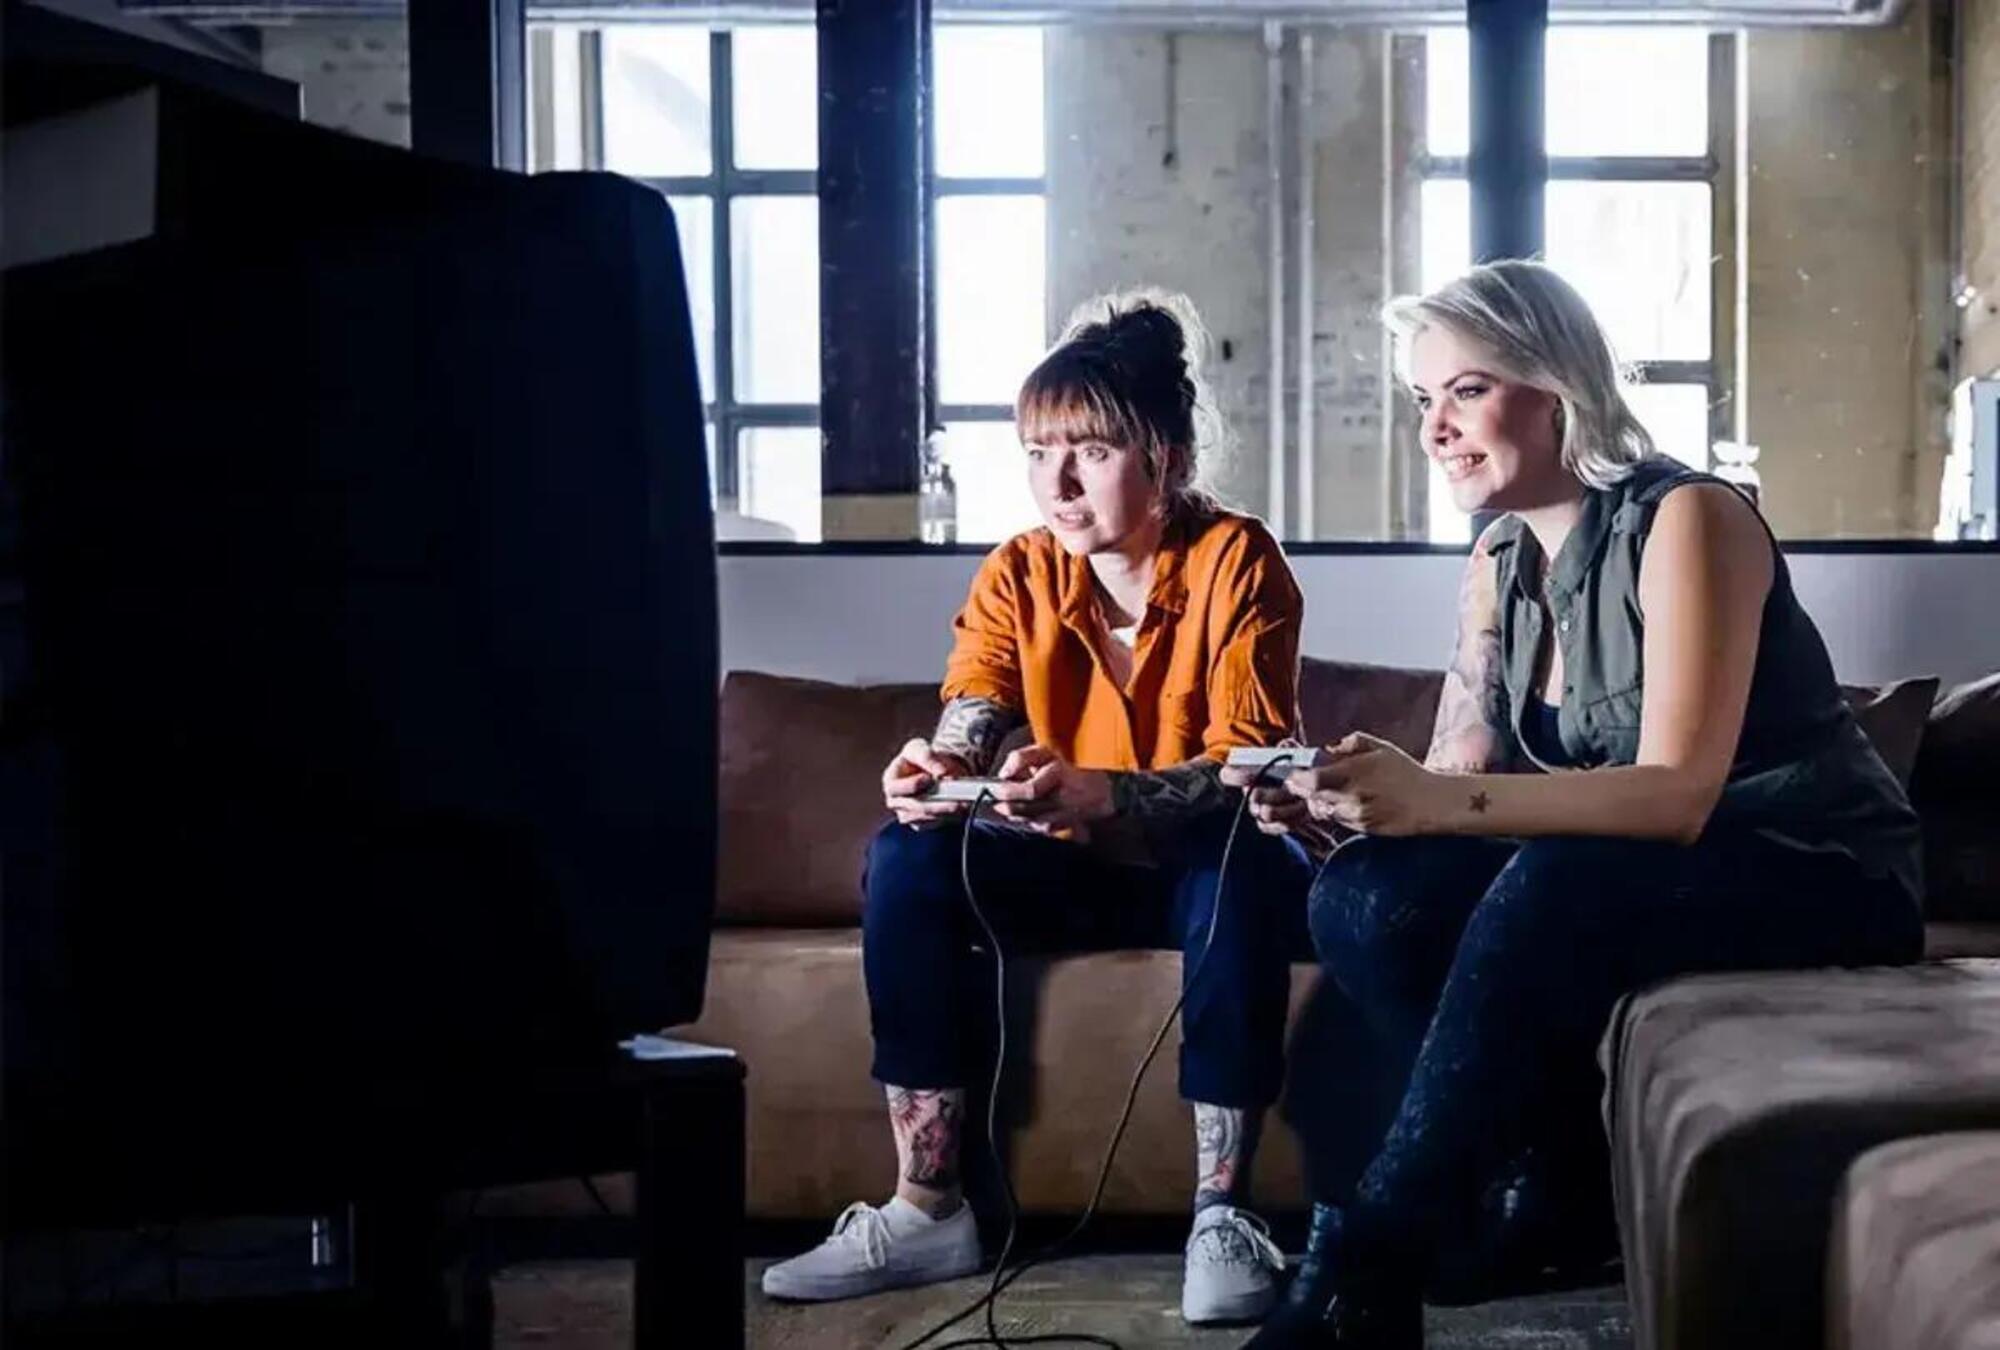 Nuovi studi dimostrano che il gaming pu&ograve; aiutare a socializzare e a ridurre lo stress